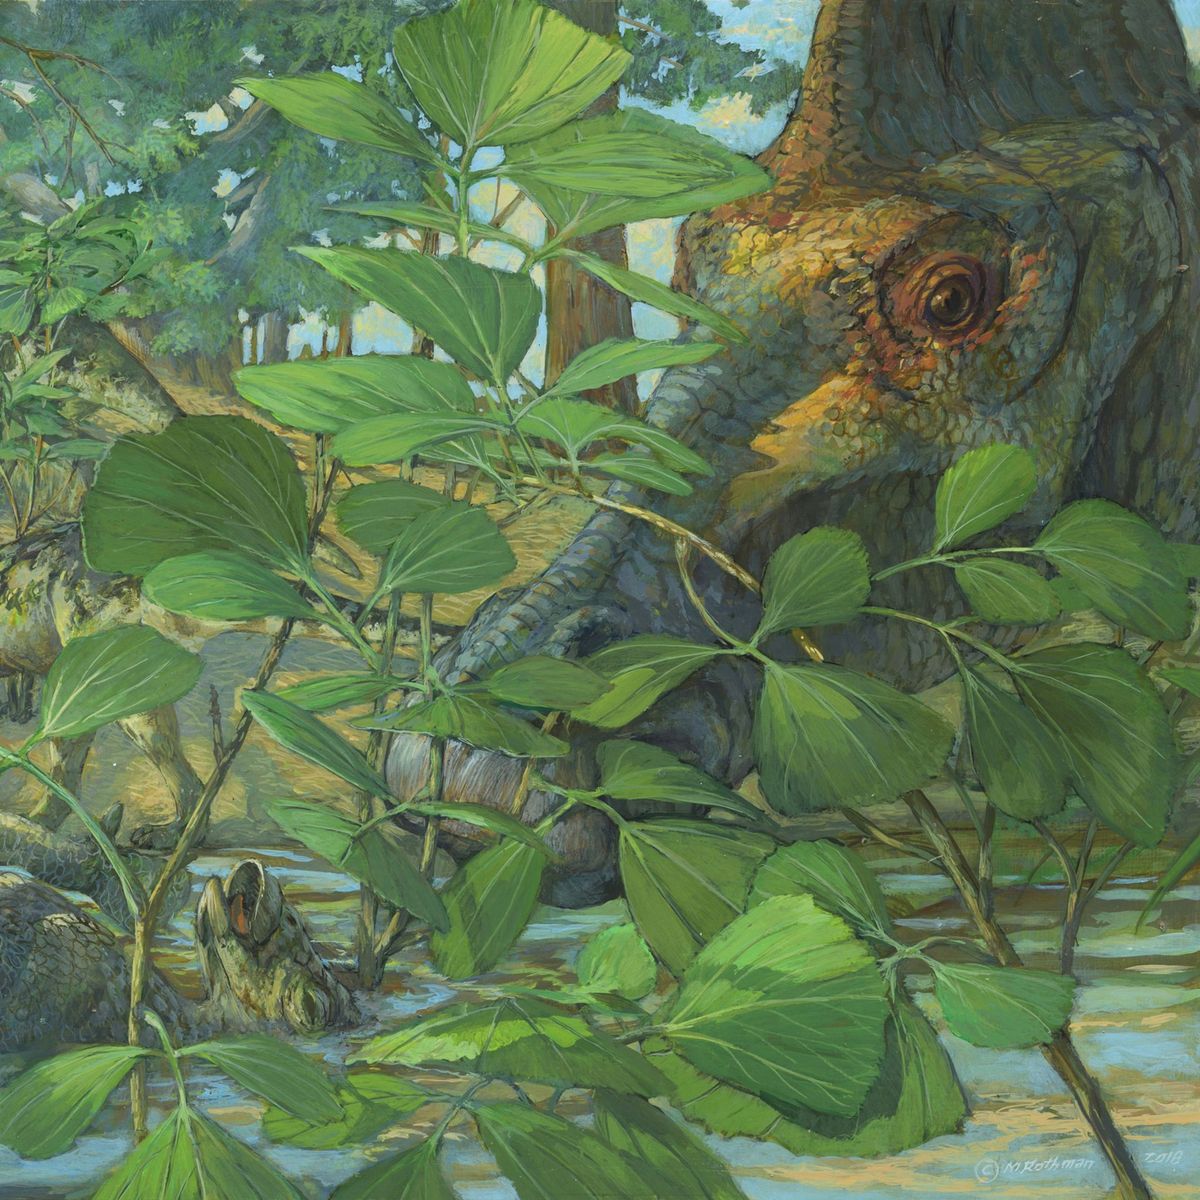 Rond 75 miljoen jaar geleden leefde de plantenetende hadrosaurir Hypacrosaurus stebingeri in een gebied dat nu in de Amerikaanse staat Montana ligt Bij nieuw onderzoek naar nestkuikens van deze soort zijn nu gefossiliseerde resten van delende cellen celkernen en chromosomen ontdekt naast mogelijke aanwijzingen voor de aanwezigheid van bewaard gebleven DNA